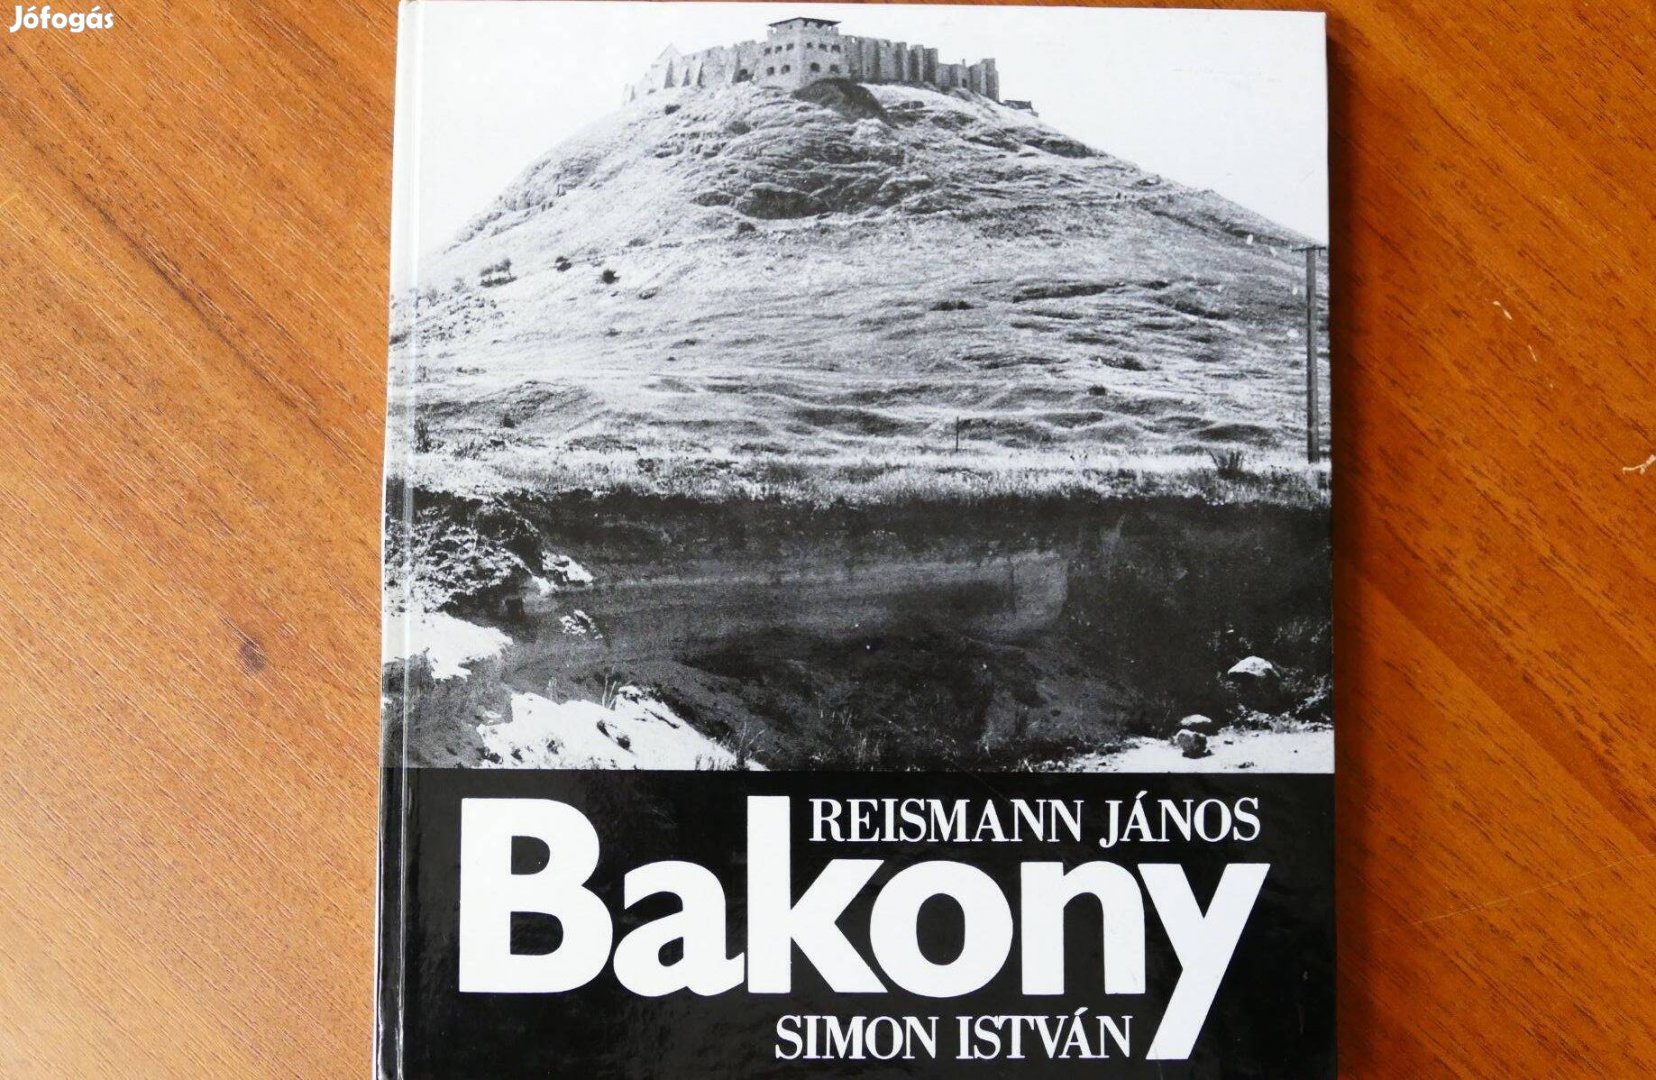 Reismann János-Simon István : Bakony